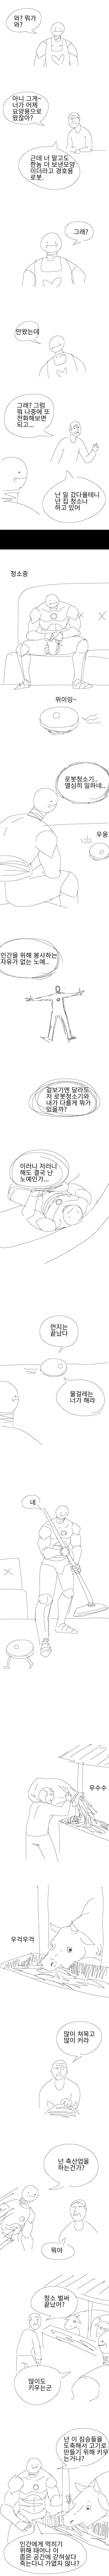 김치찌개를 잘하는 든든한 안드로이드 만화.jpg